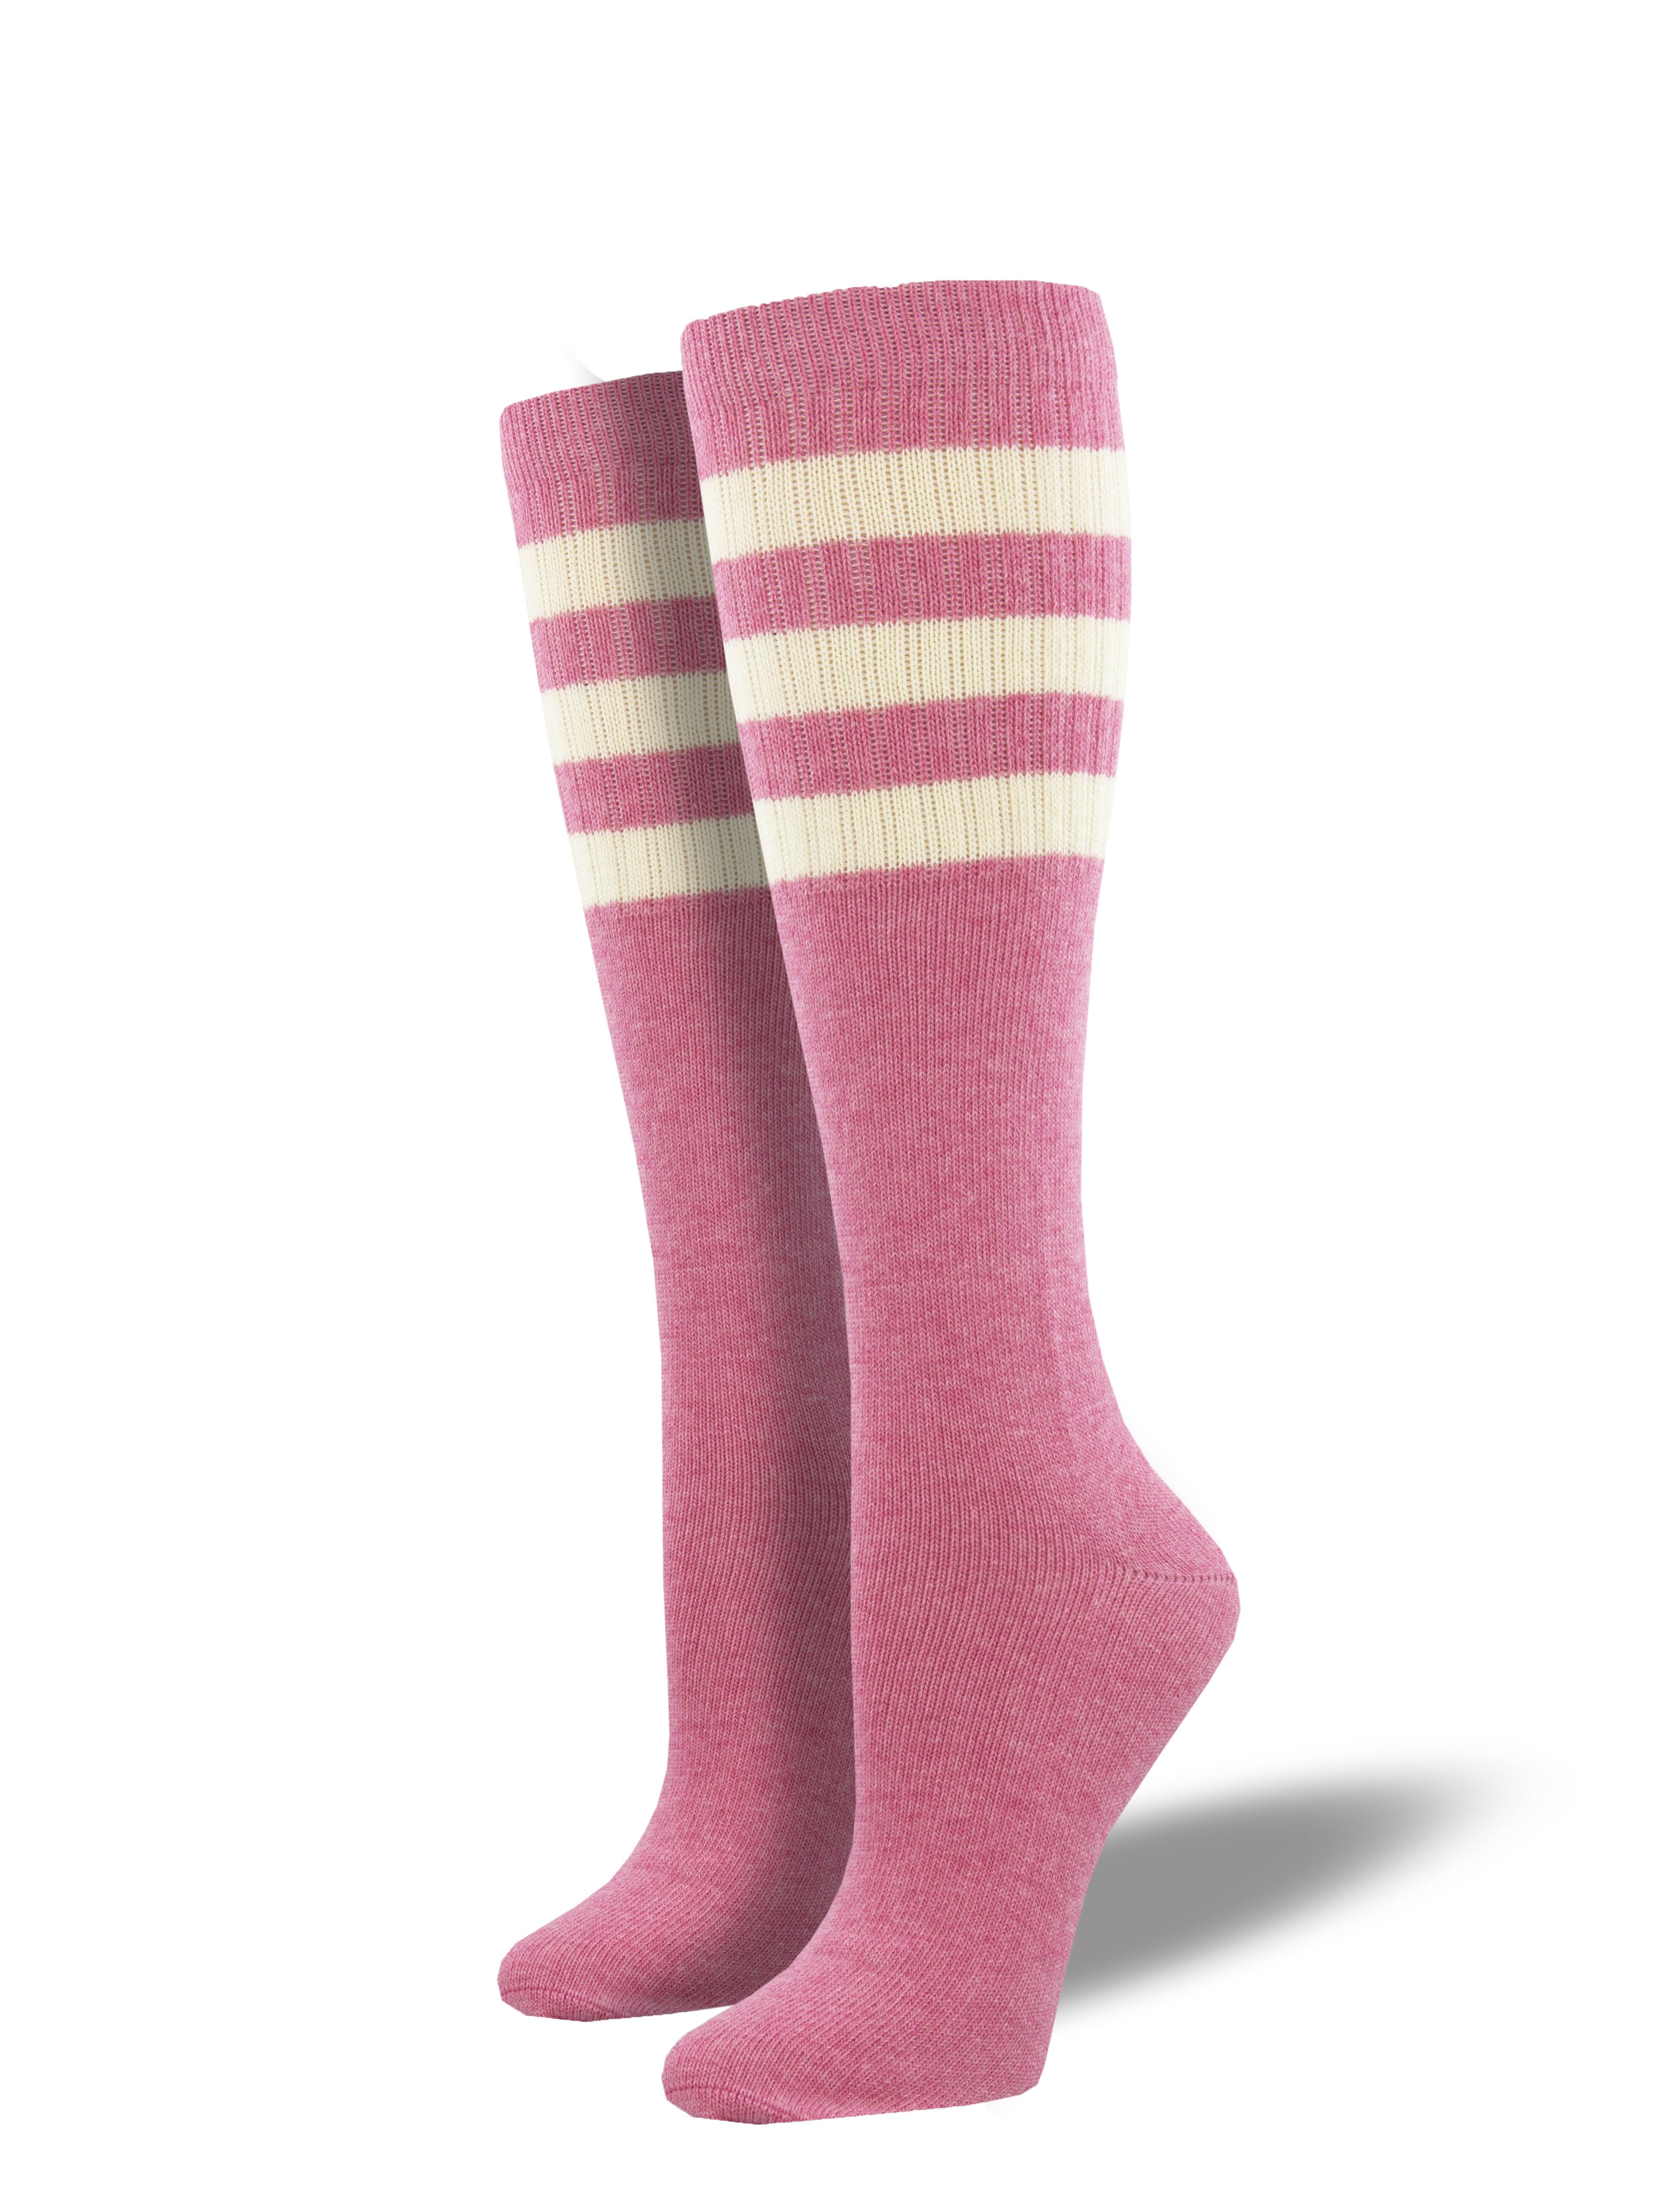 Unisex "High Roller Stripe" Knee High Socks